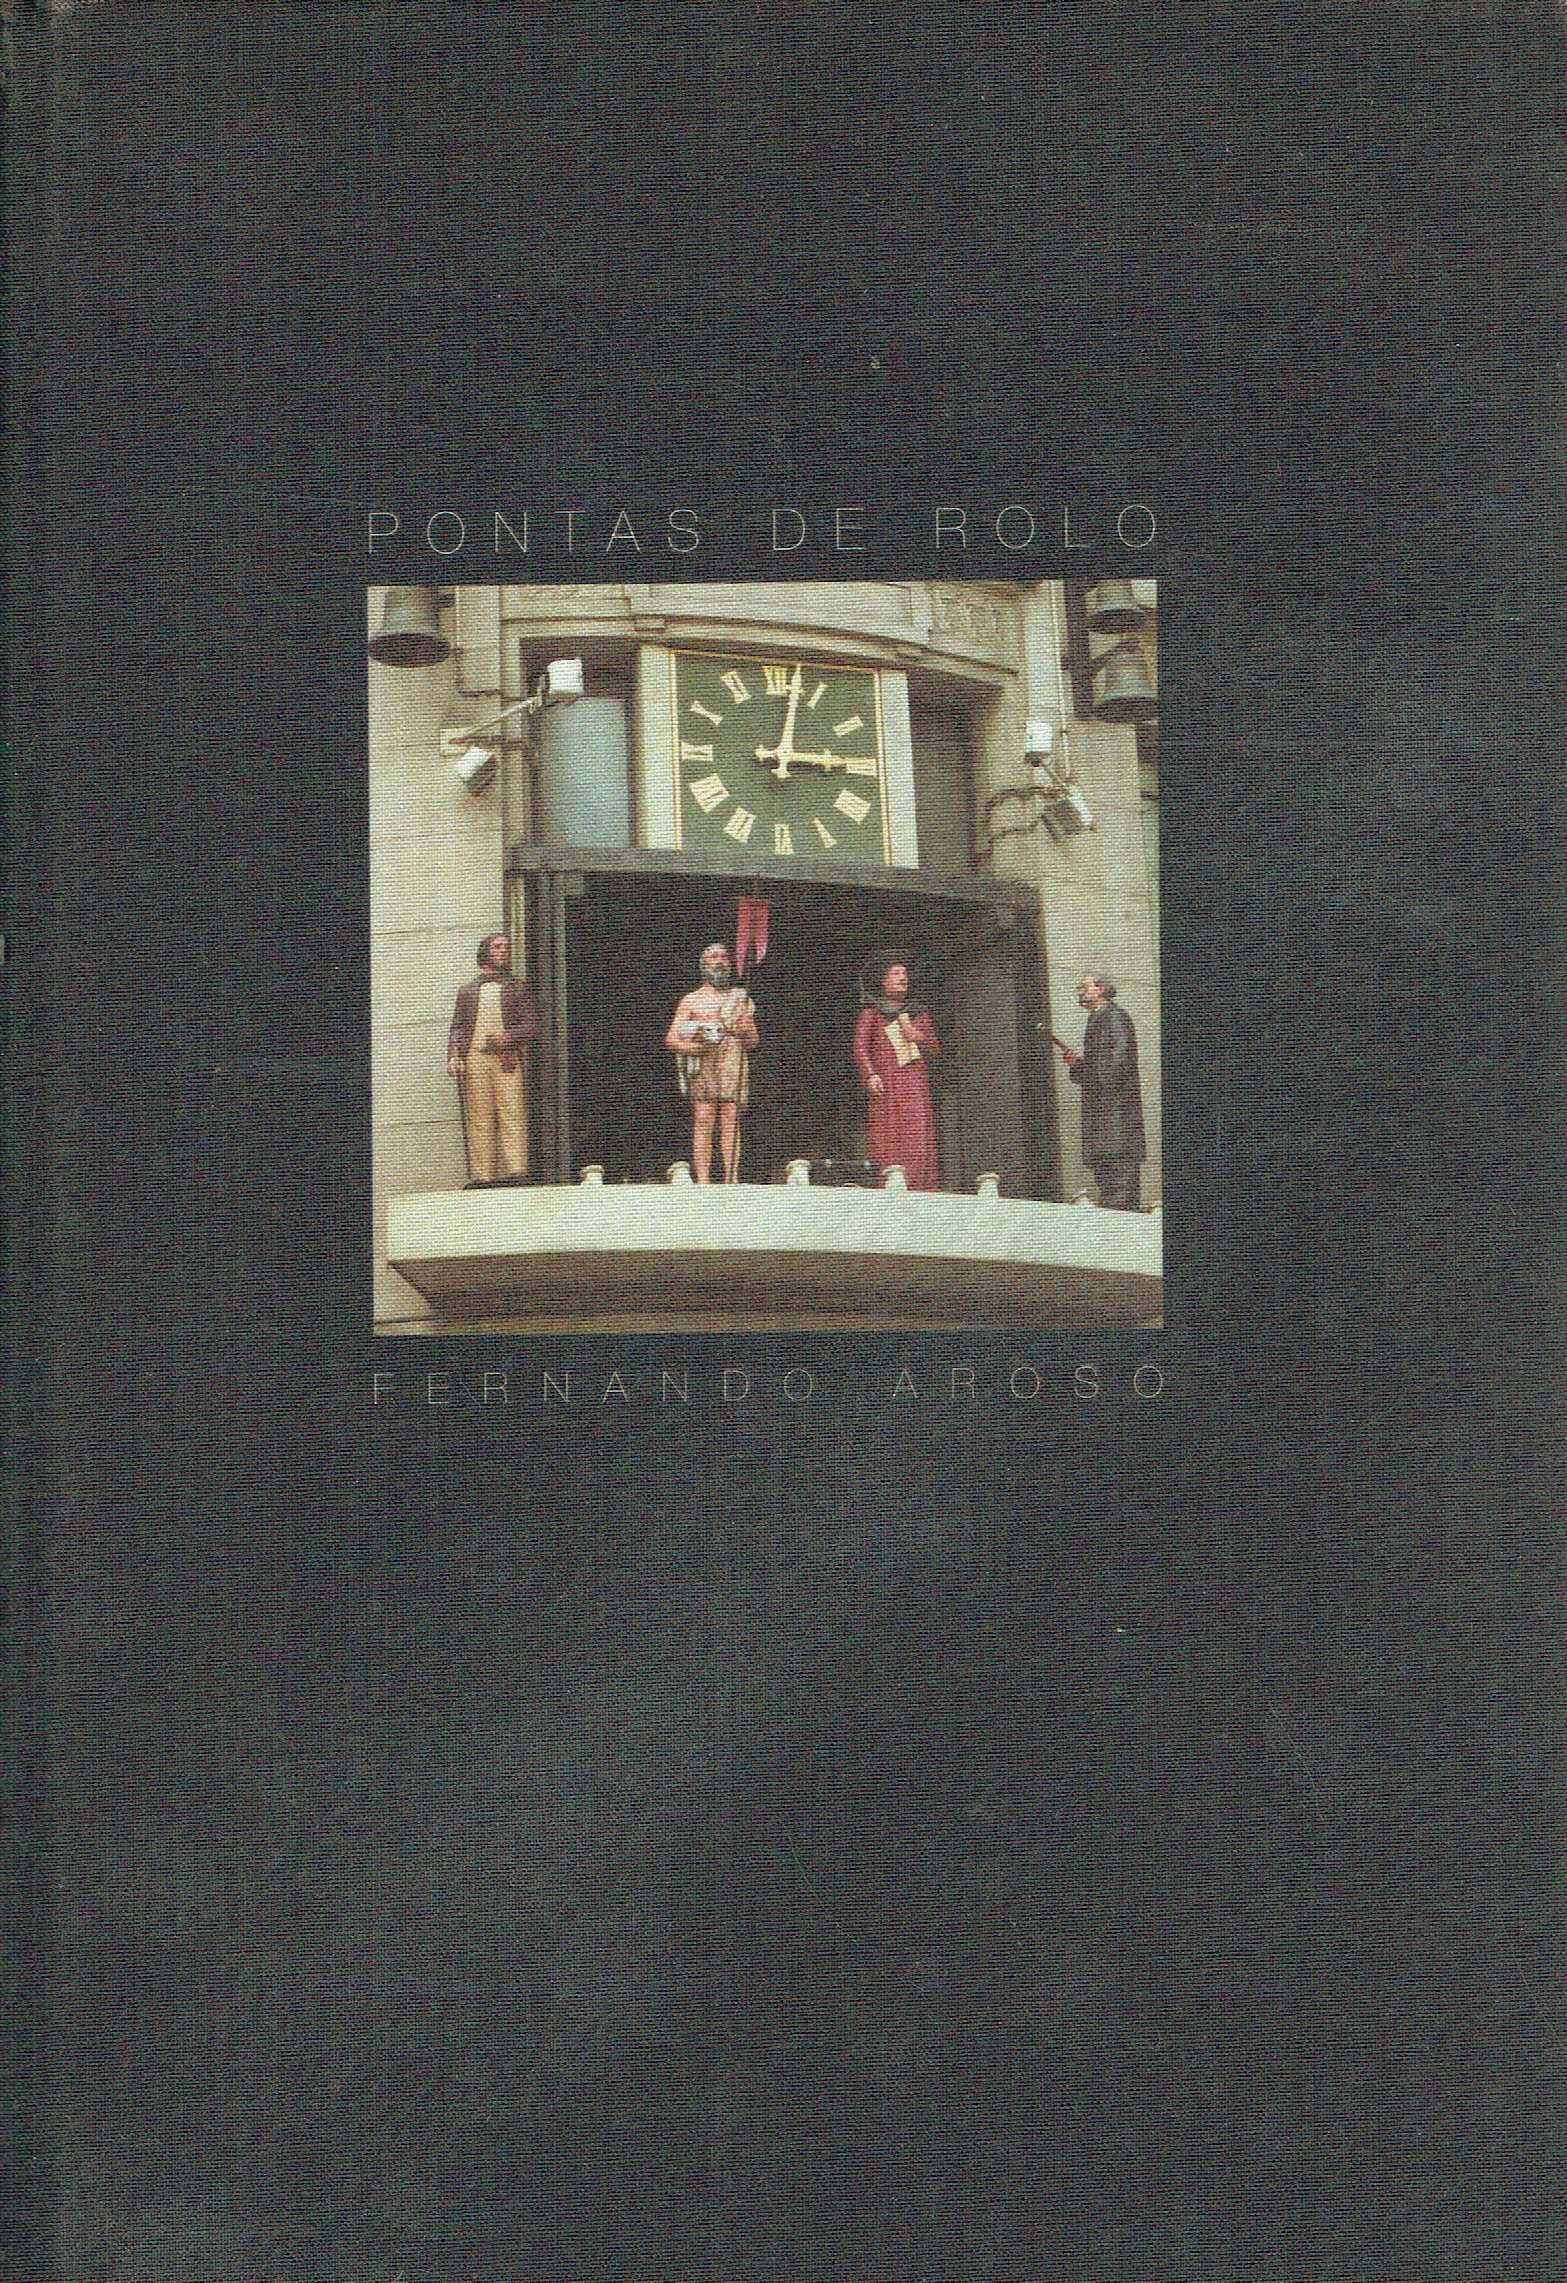 7331

Pontas de Rolo
de Fernando Aroso